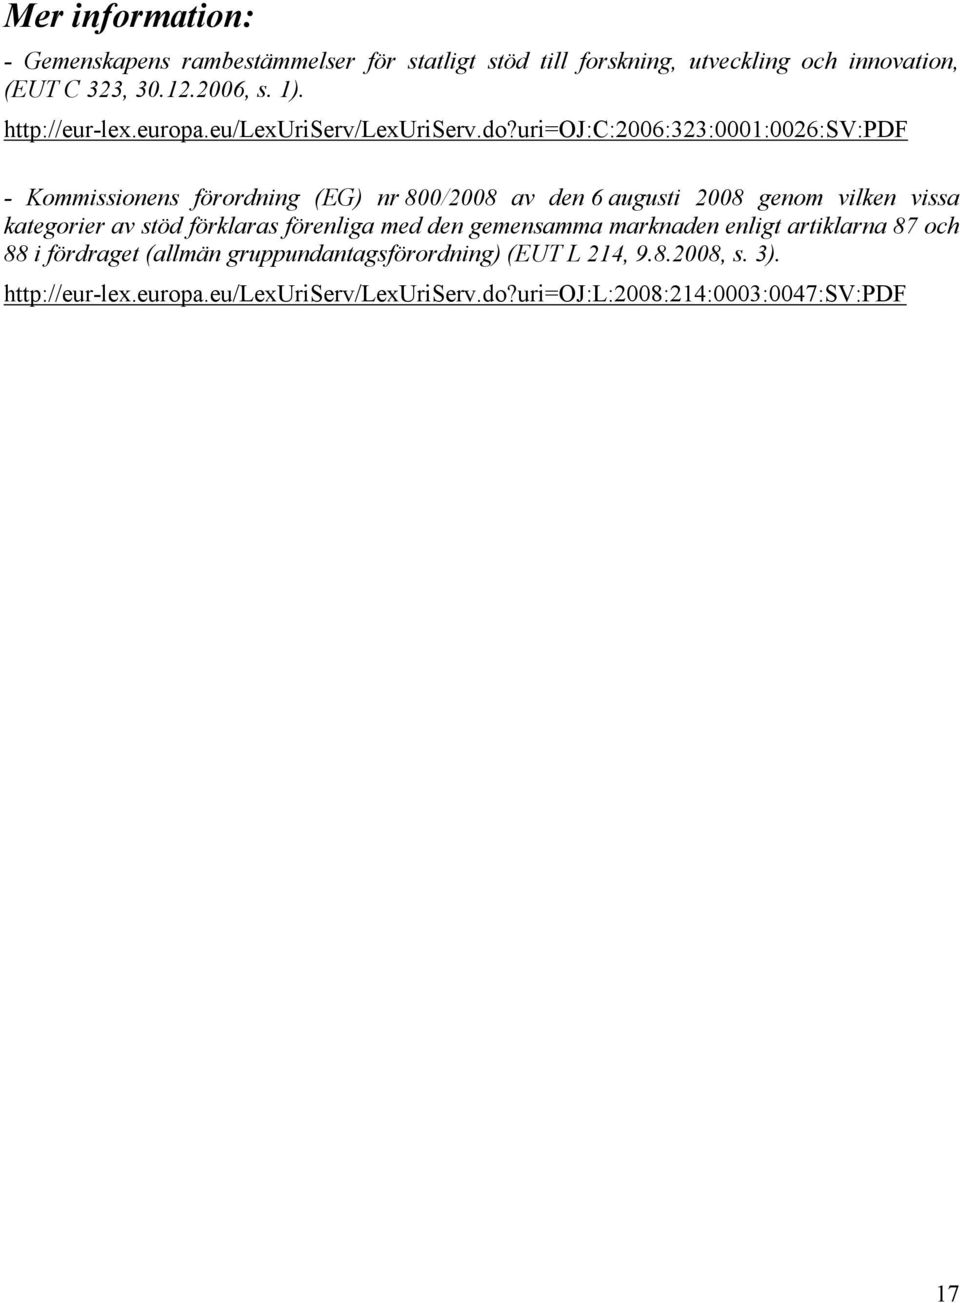 uri=oj:c:2006:323:0001:0026:sv:pdf - Kommissionens förordning (EG) nr 800/2008 av den 6 augusti 2008 genom vilken vissa kategorier av stöd